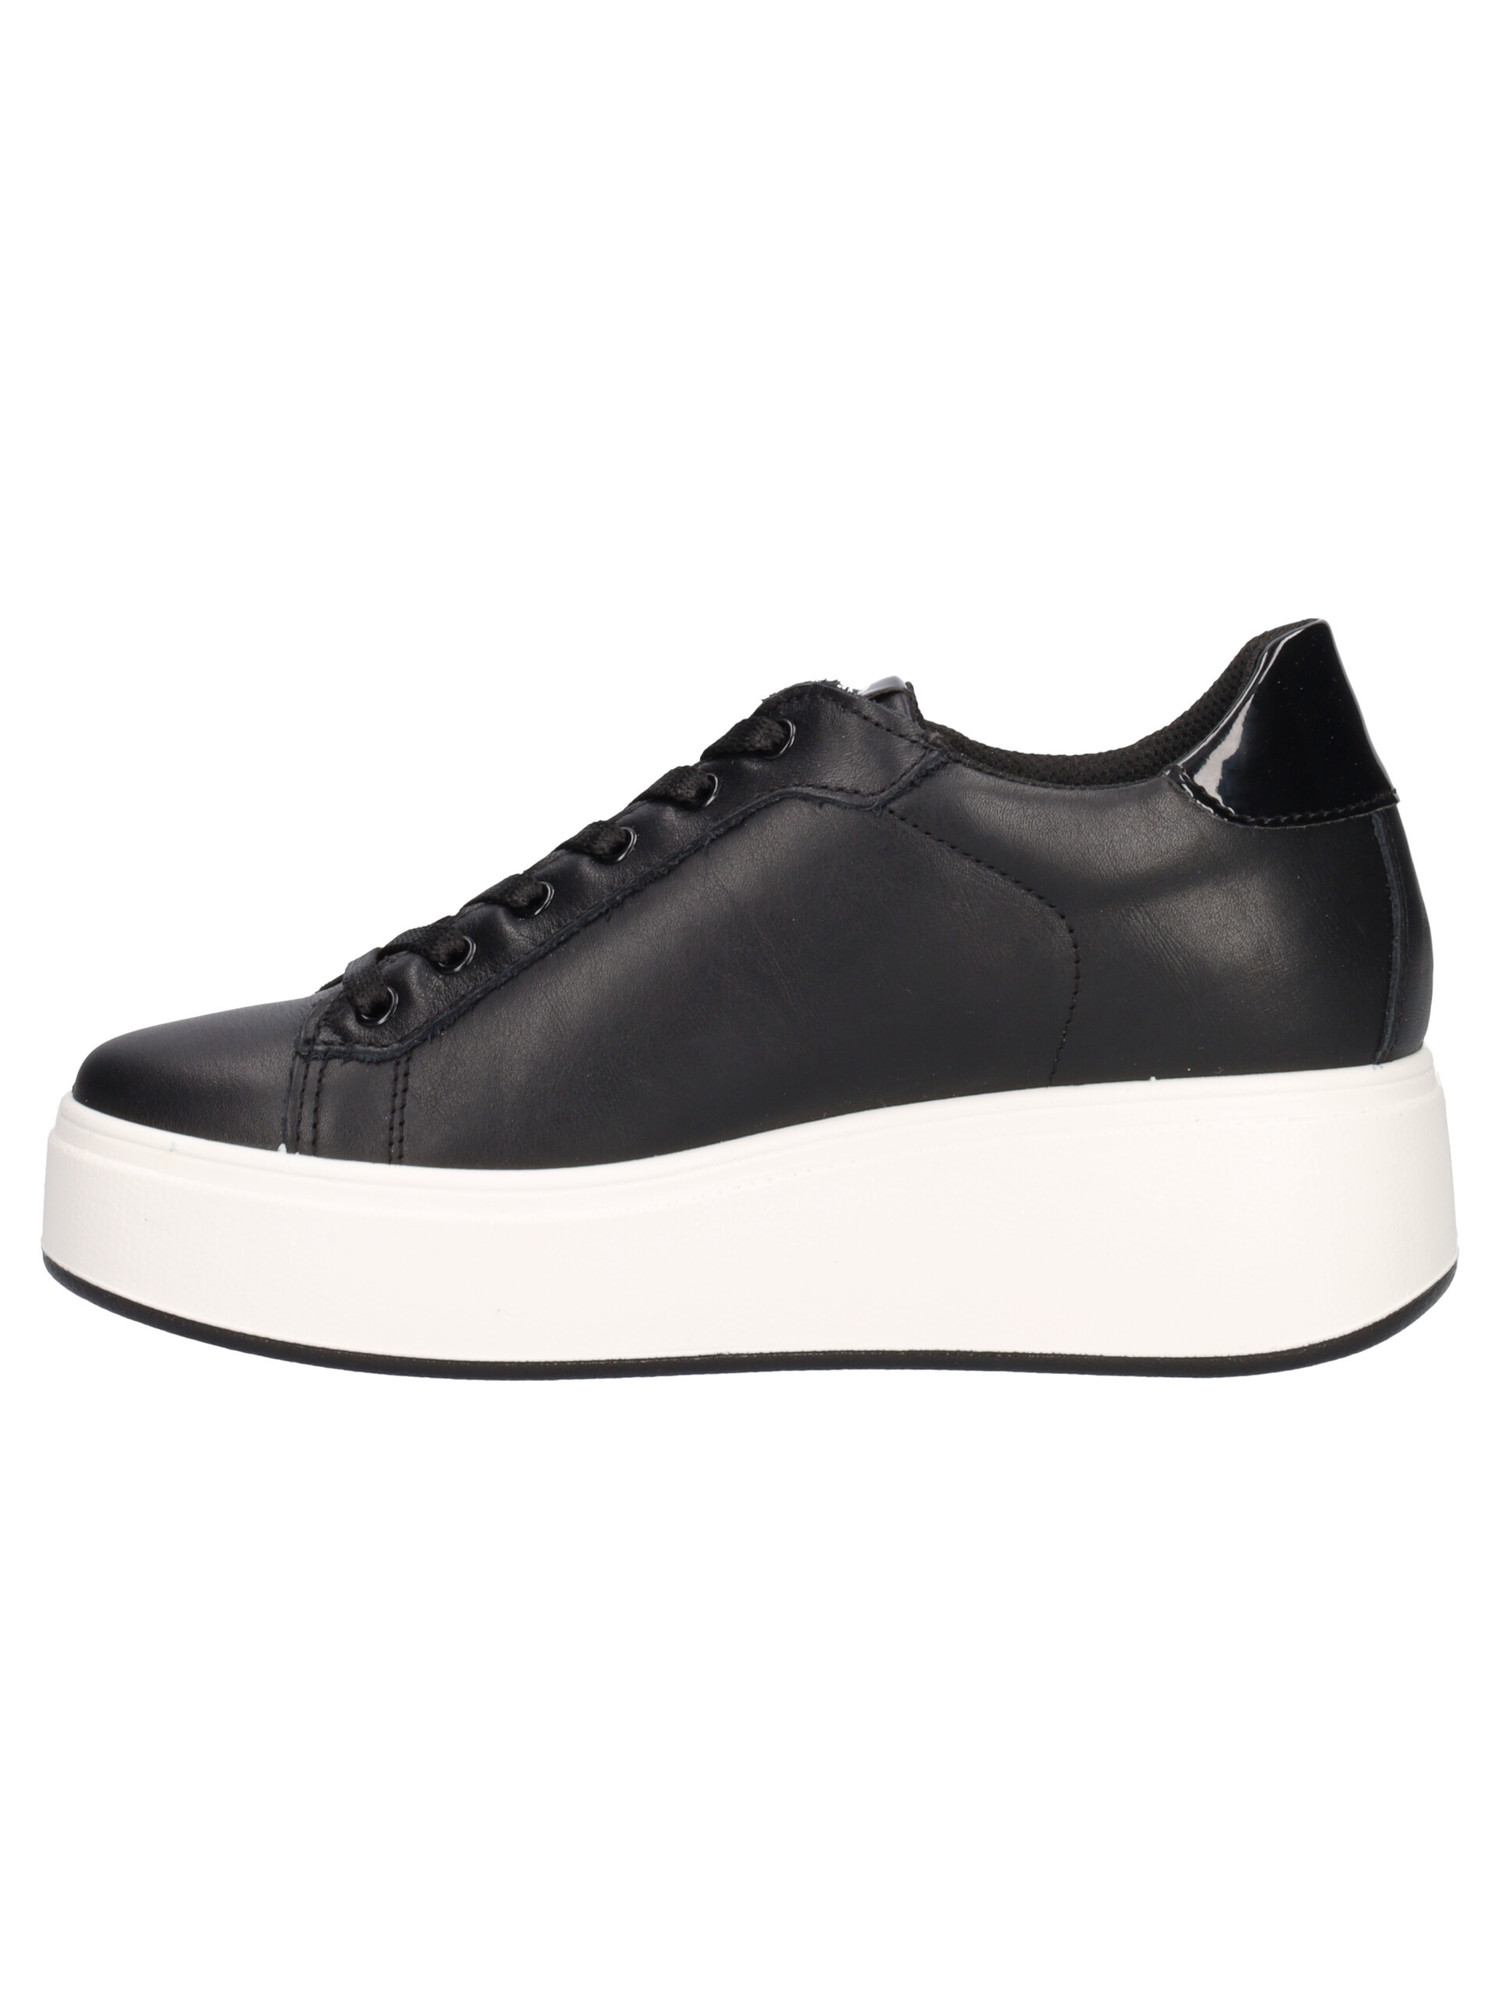 sneaker-platform-igi-and-co-da-donna-nera-3b399a